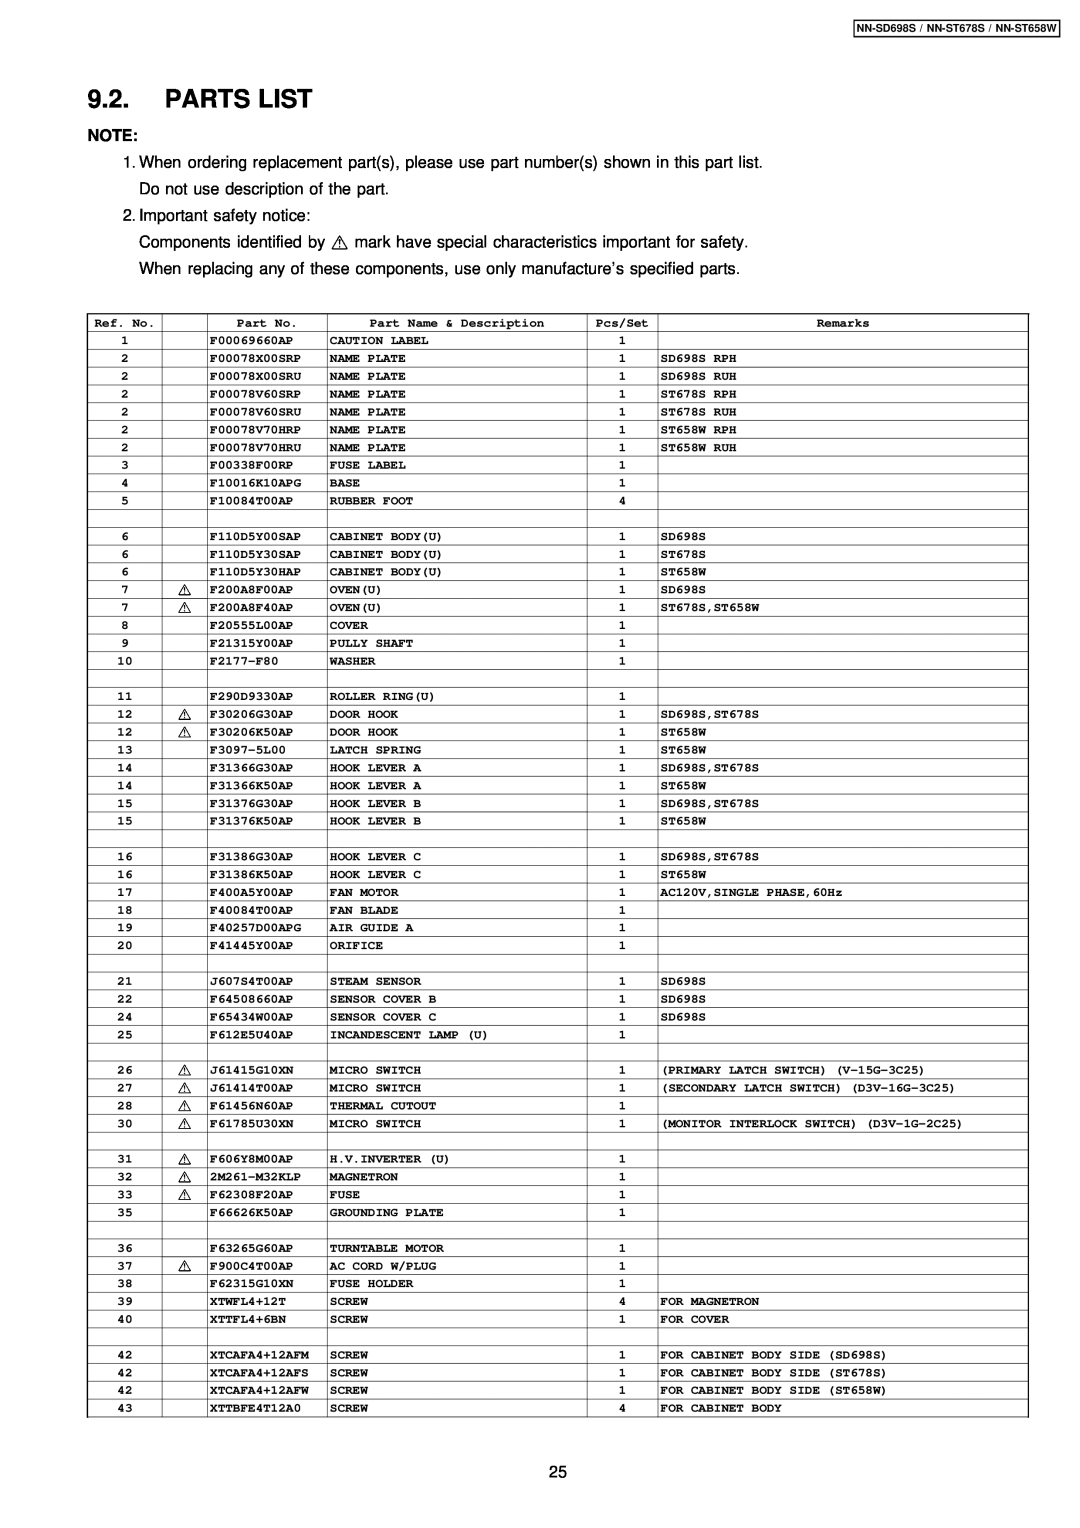 Panasonic NN-ST678S, NN-SD698S, NN-ST658W manual Parts List 